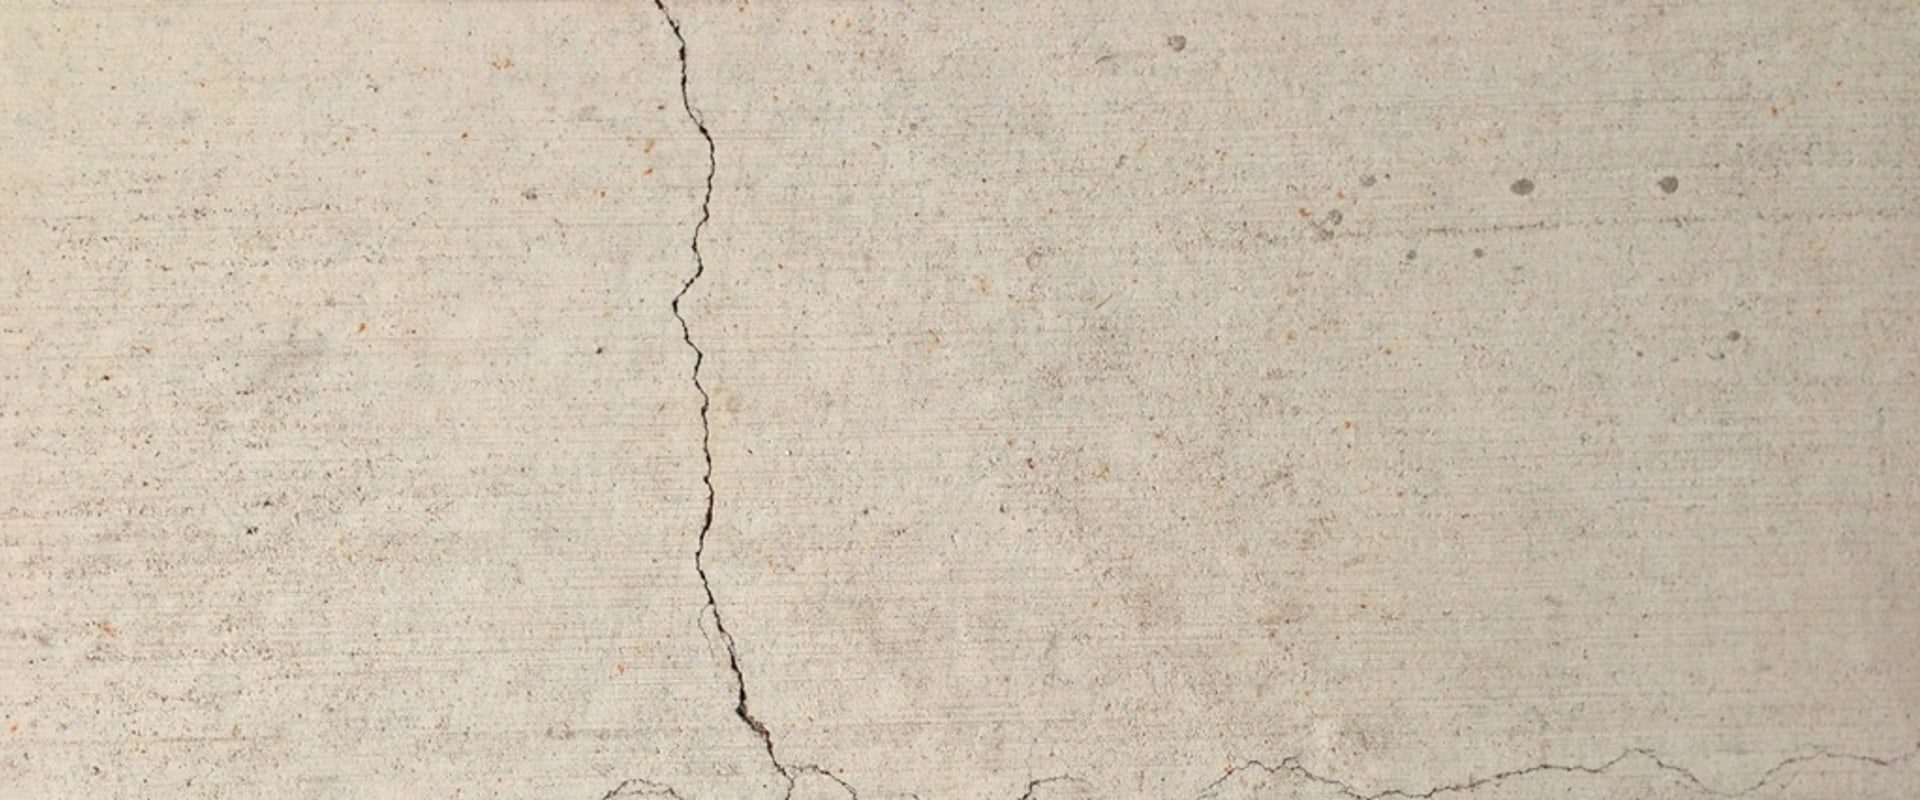 Are cracks in concrete bad?